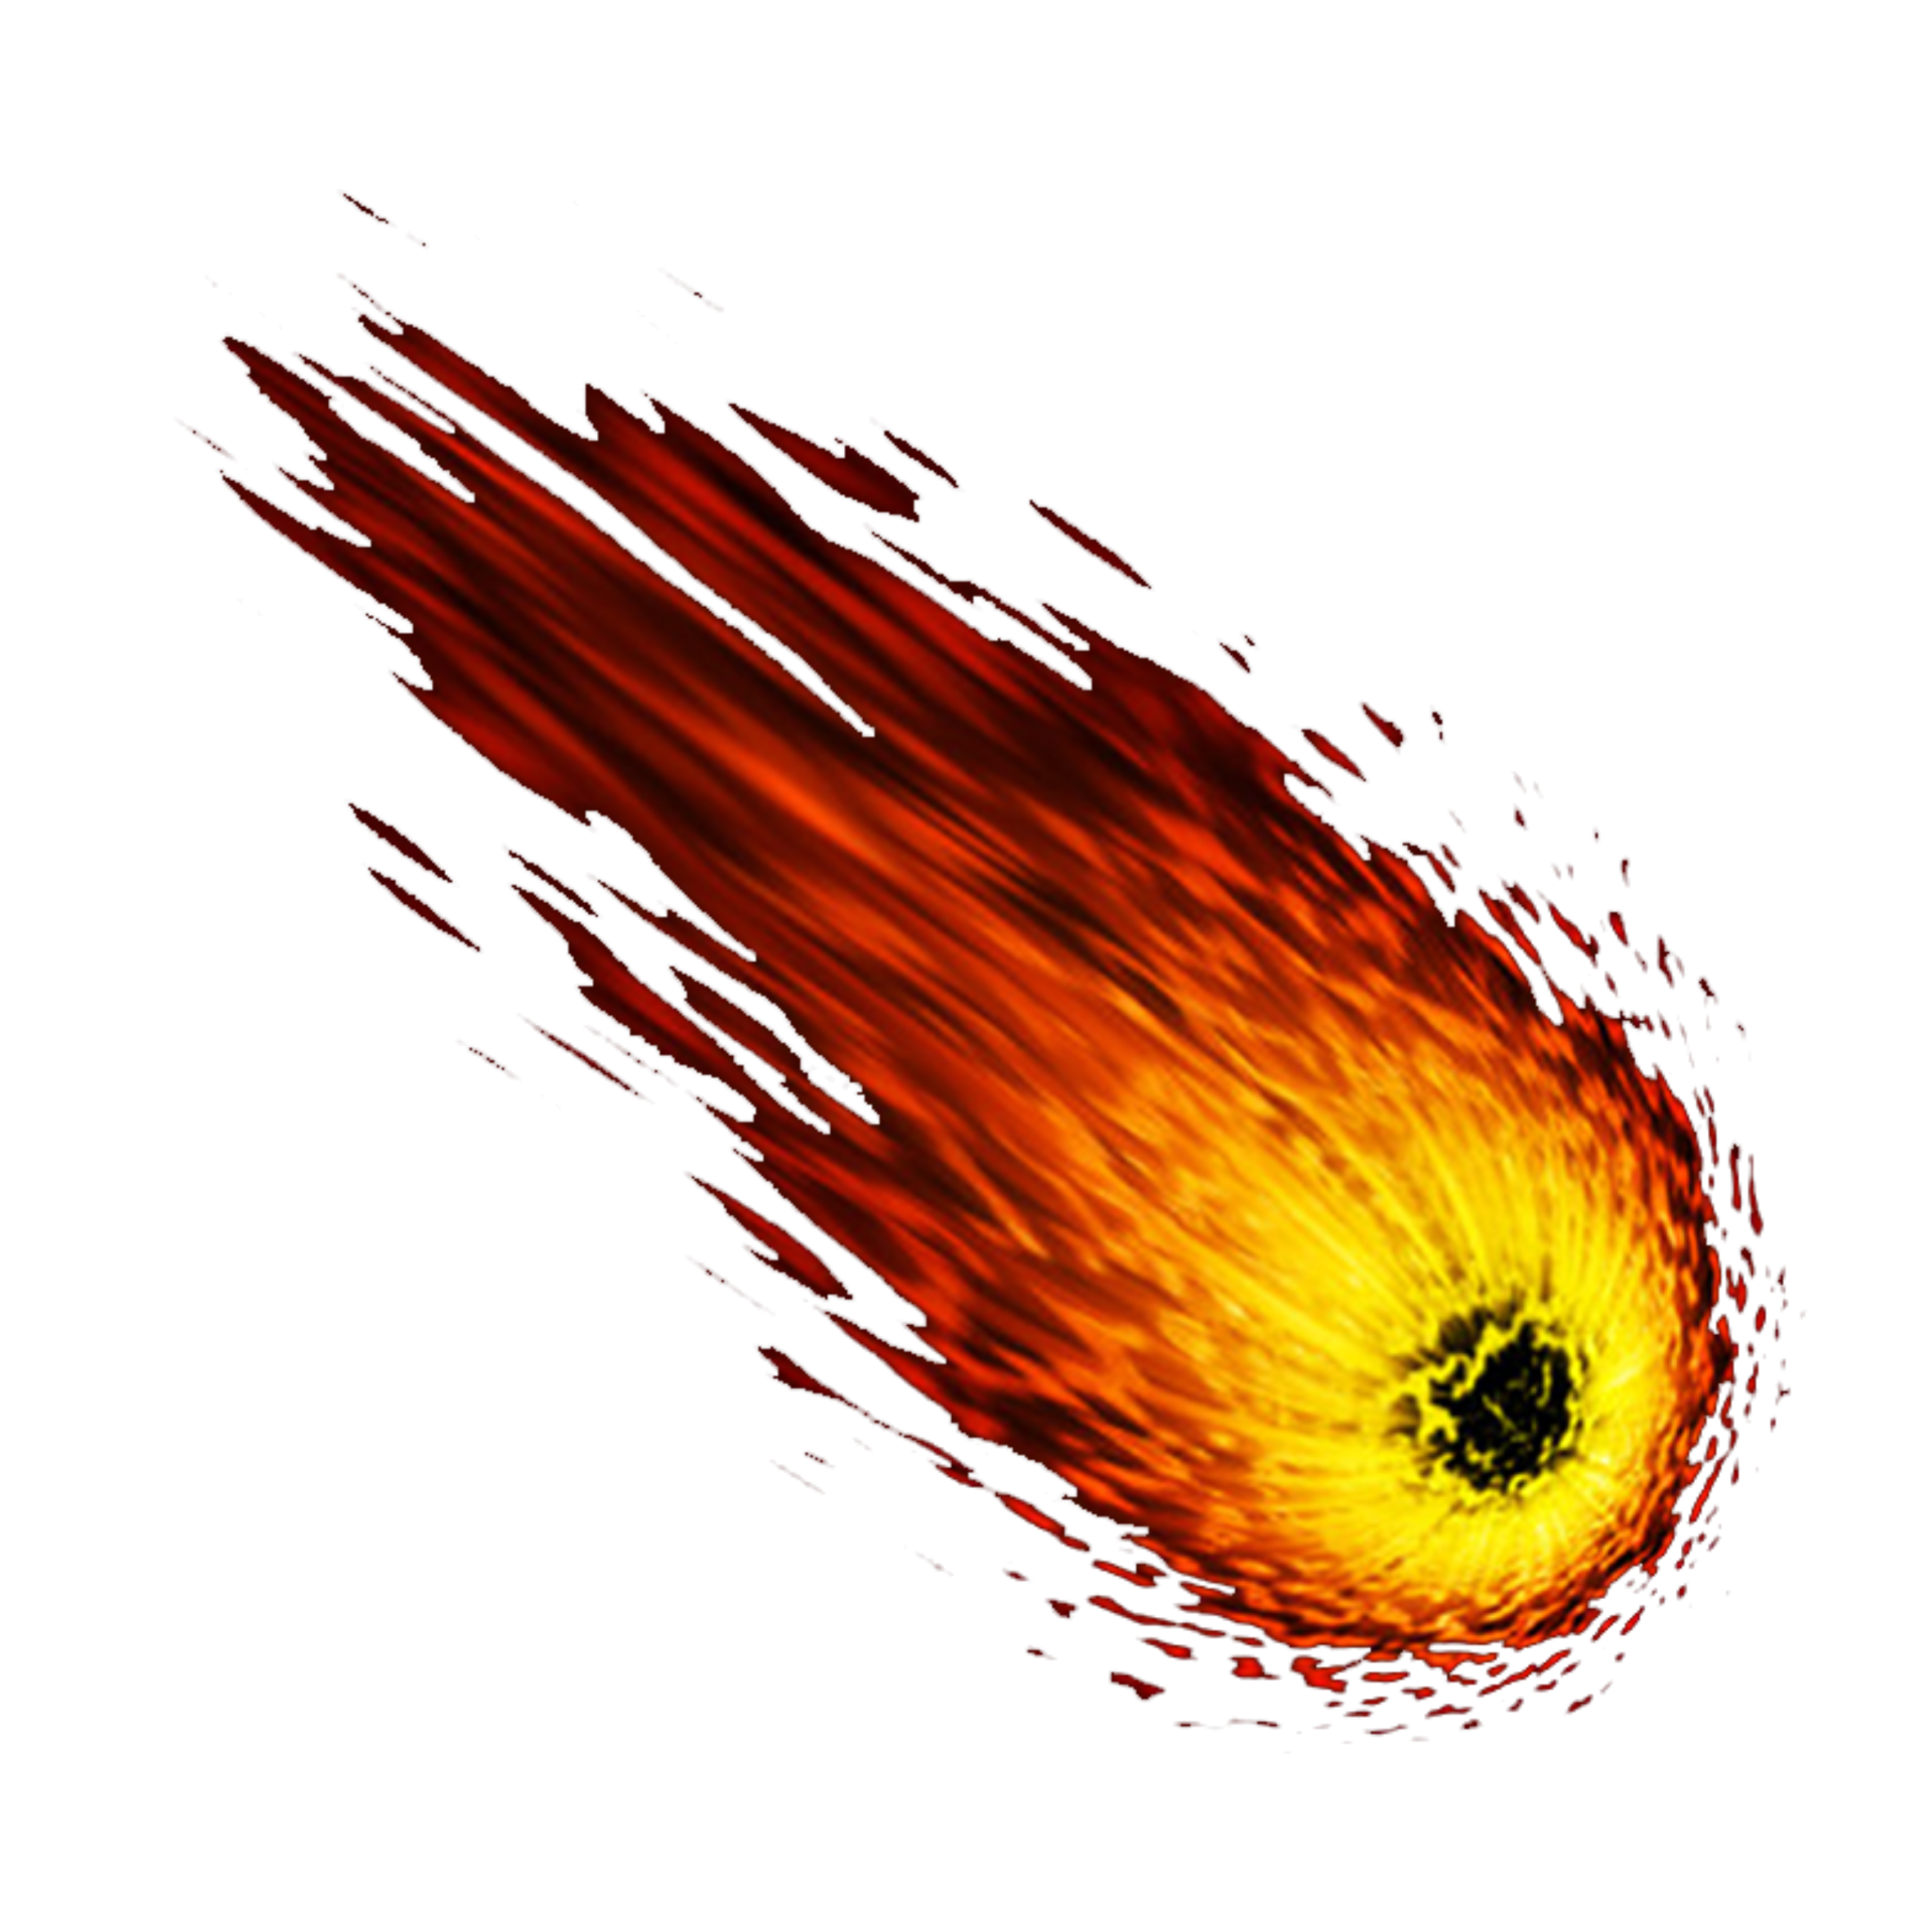 Asteroide spaziale PNG Immagine di alta qualità